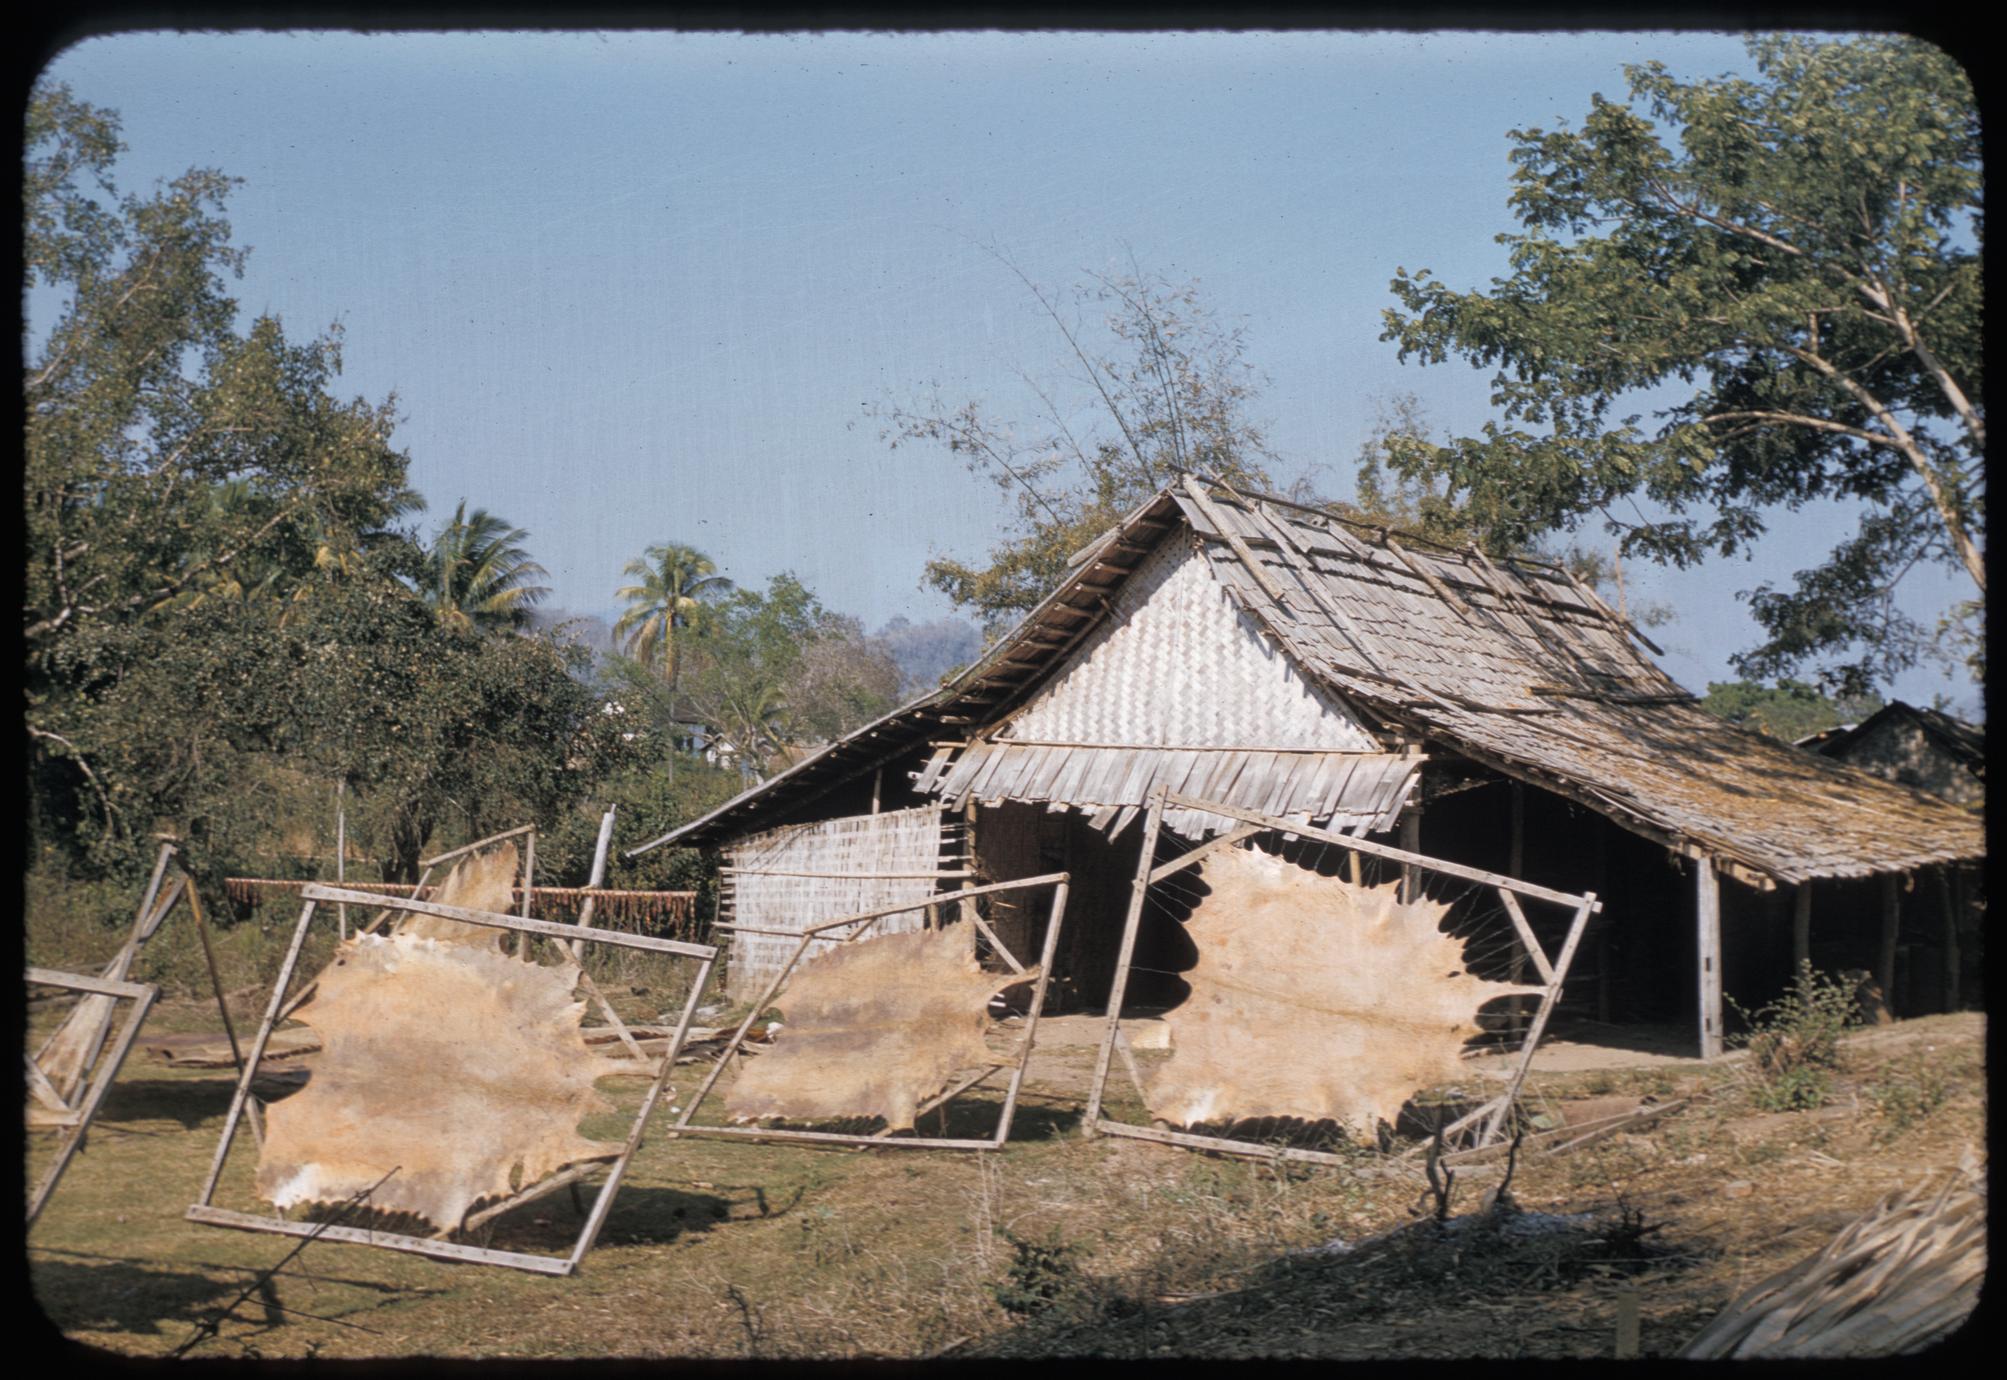 Tai Dam village near Luang Prabang : skins drying